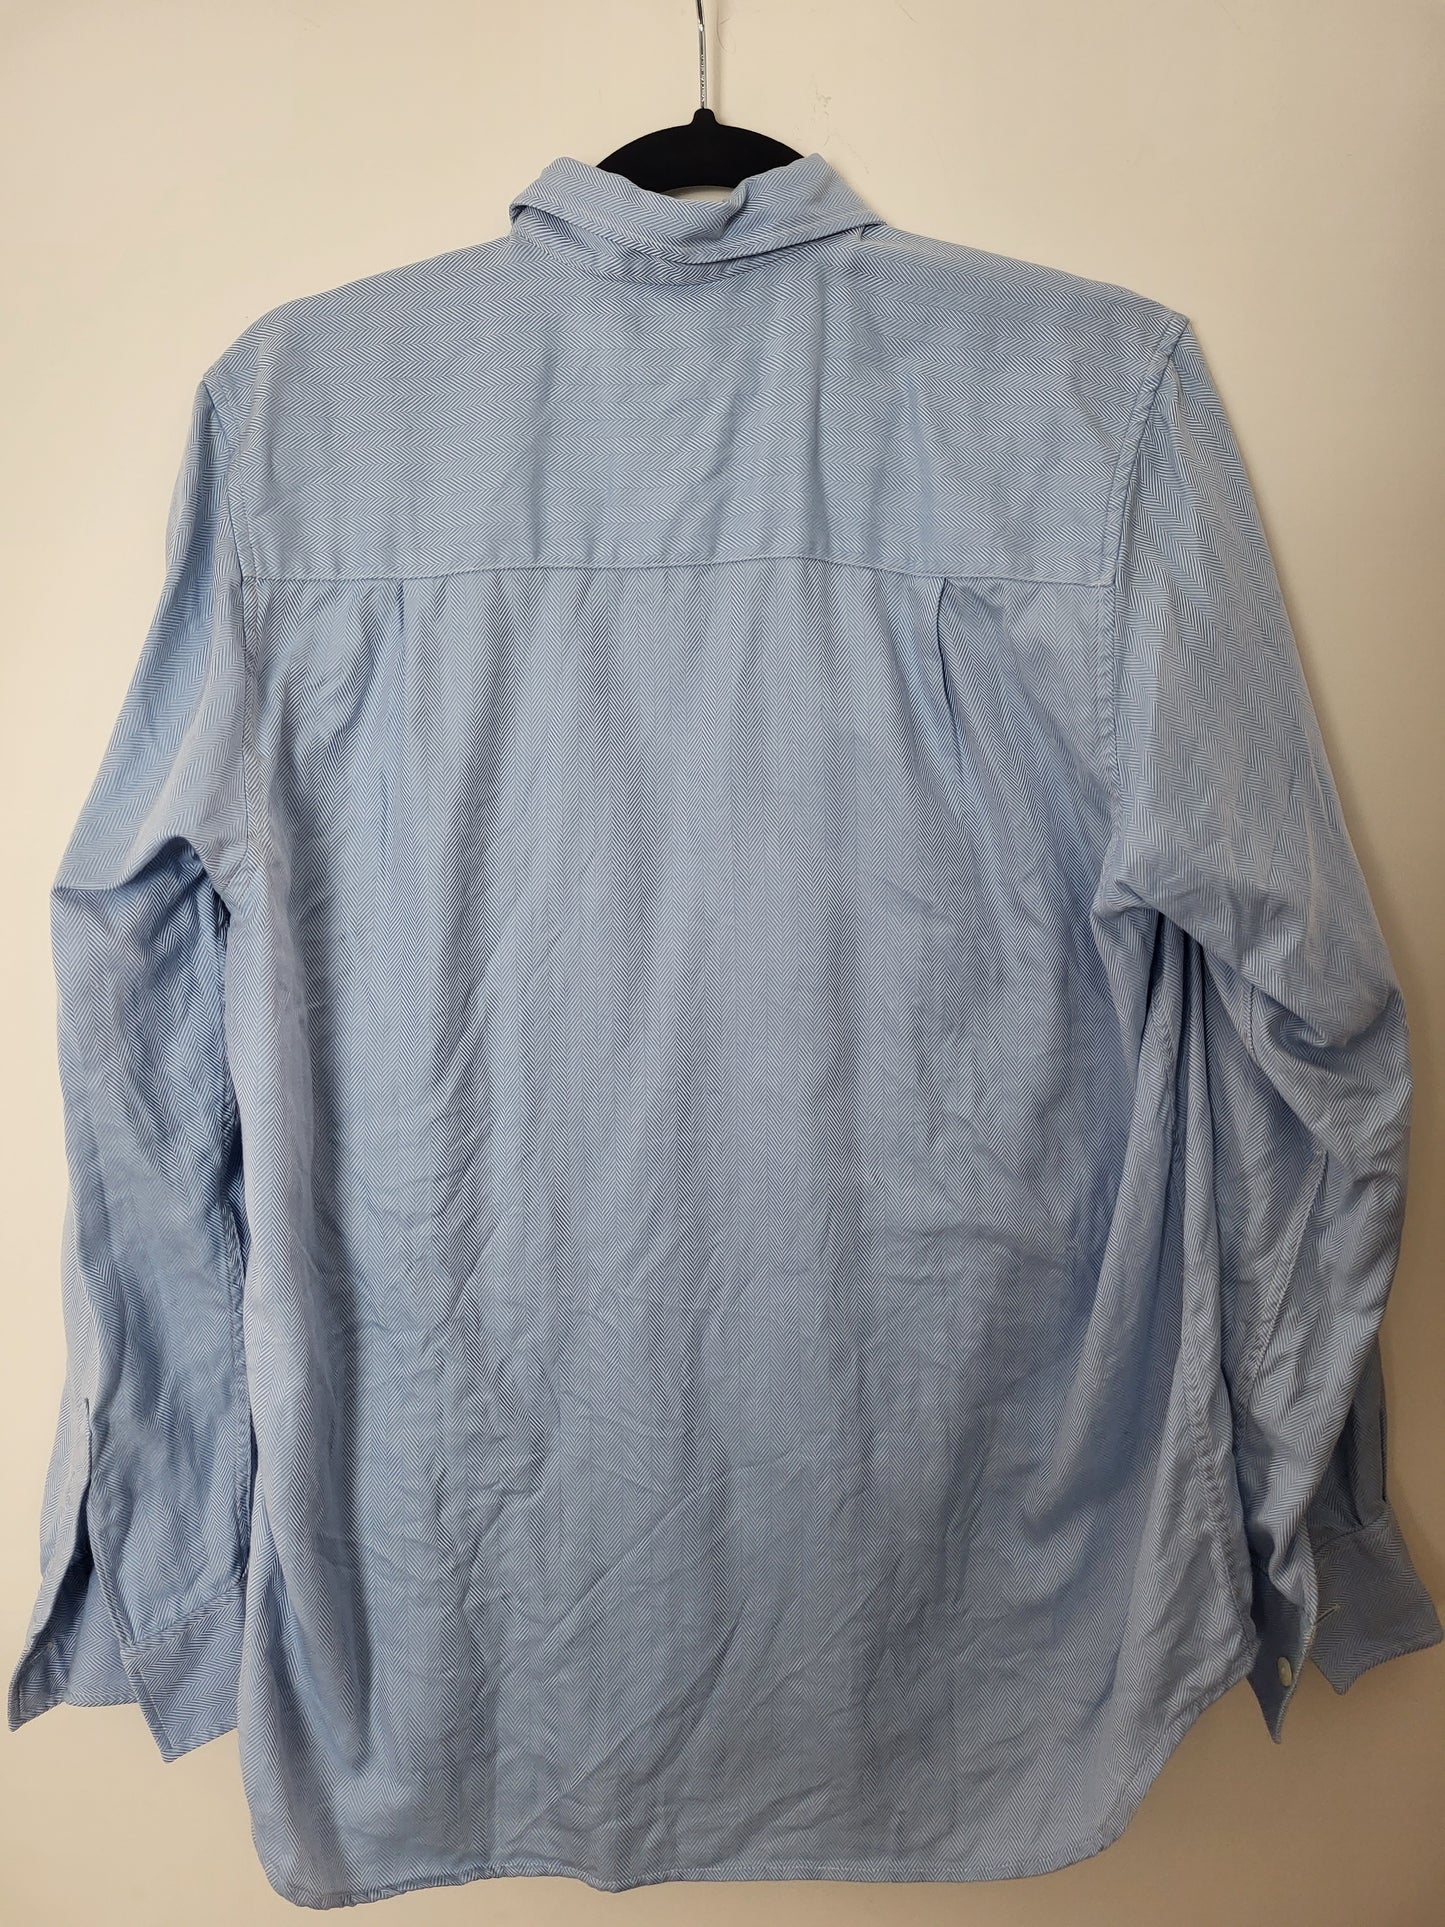 Burberry - Hemd - Streifen Muster - Vintage - Blau - Herren - M/L (42)